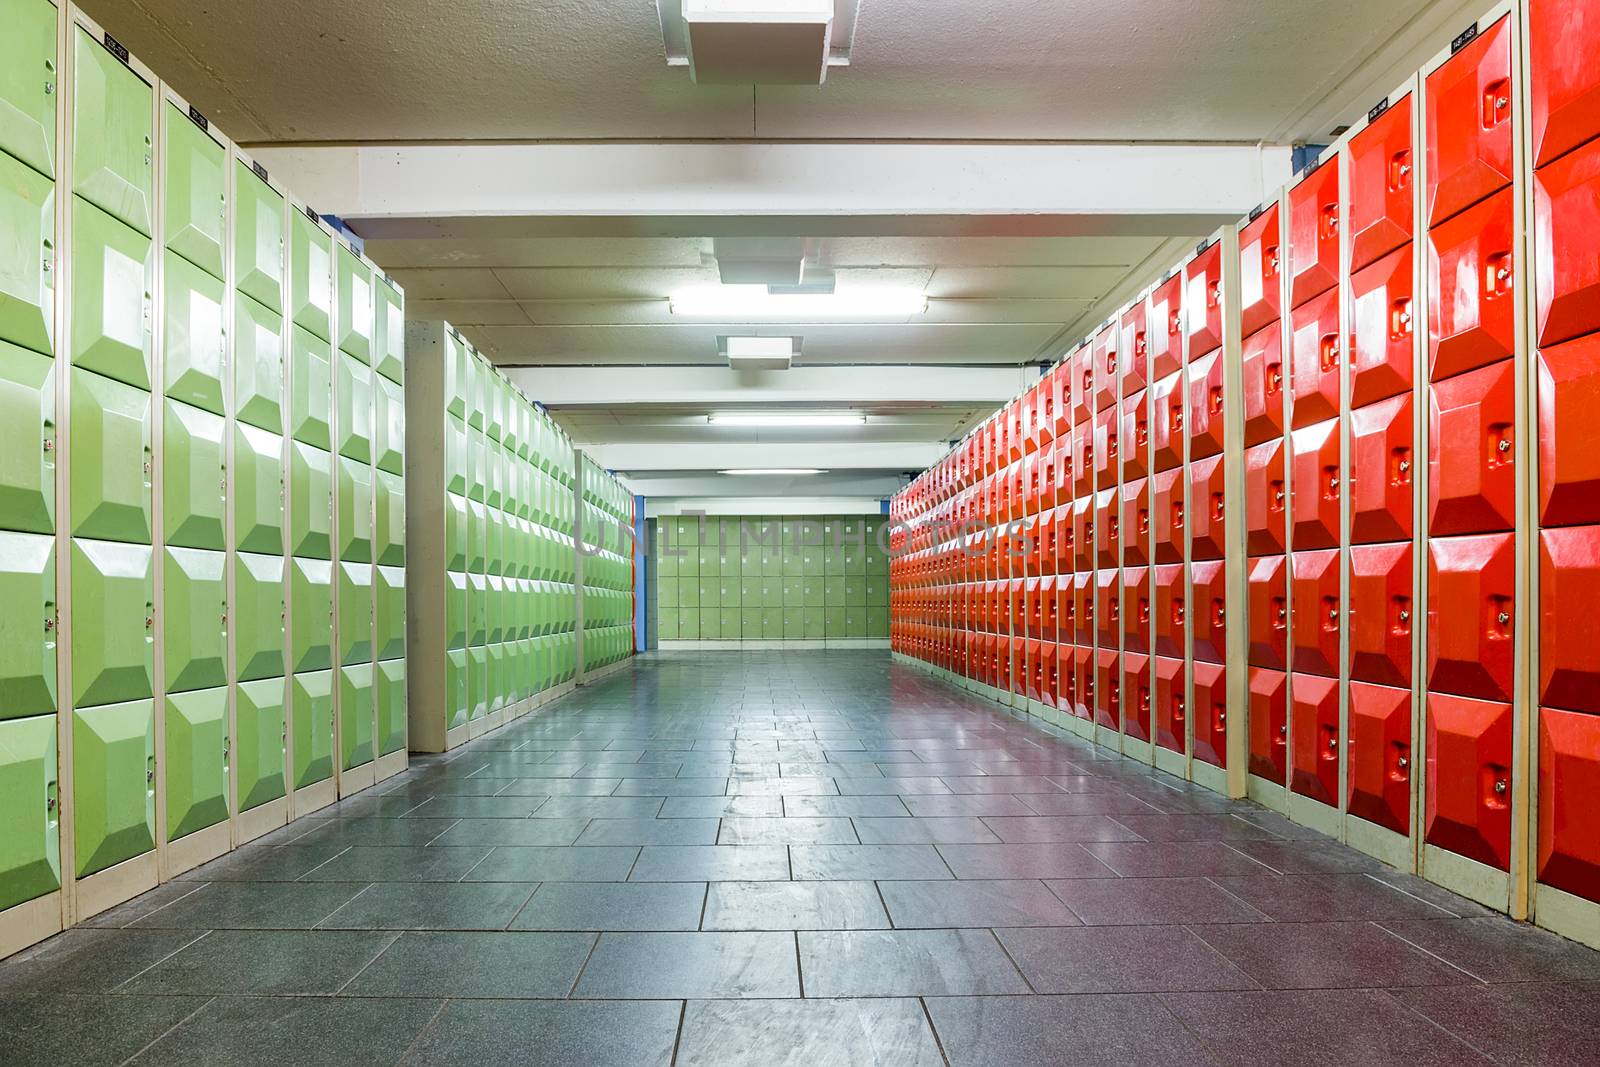 Corridor with lockers in school building to store school supplies